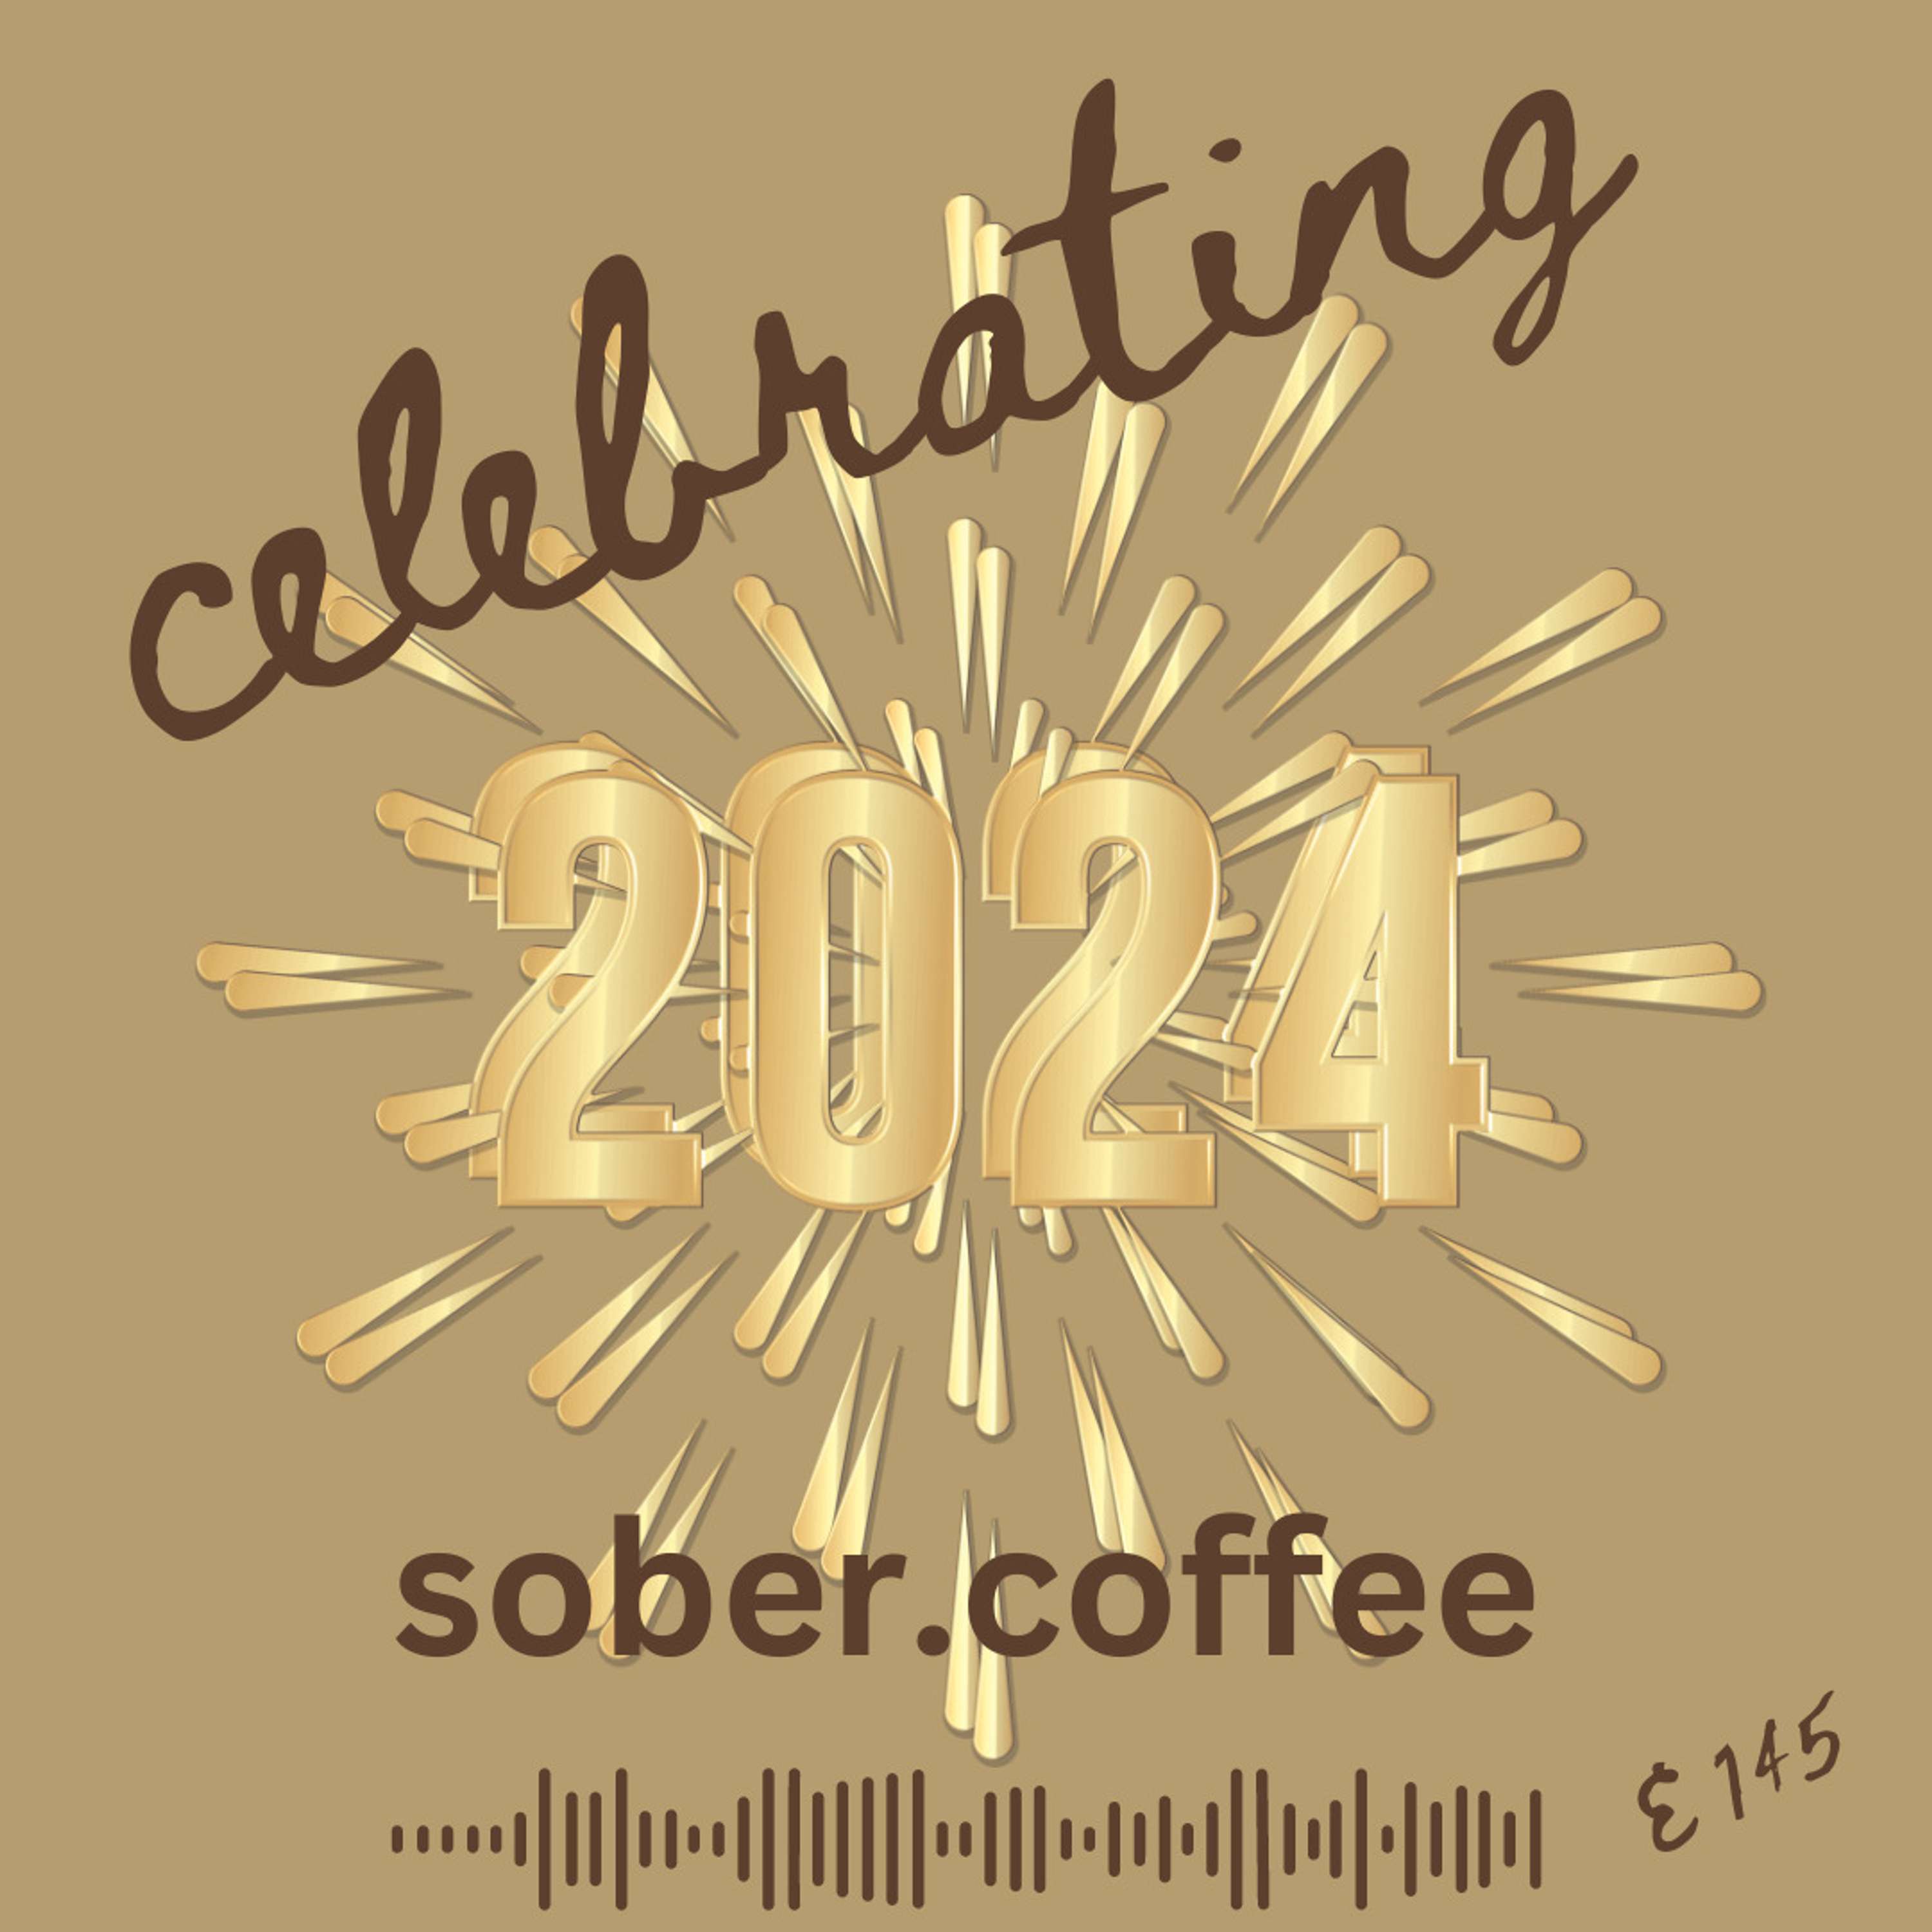 Celebrating 2024